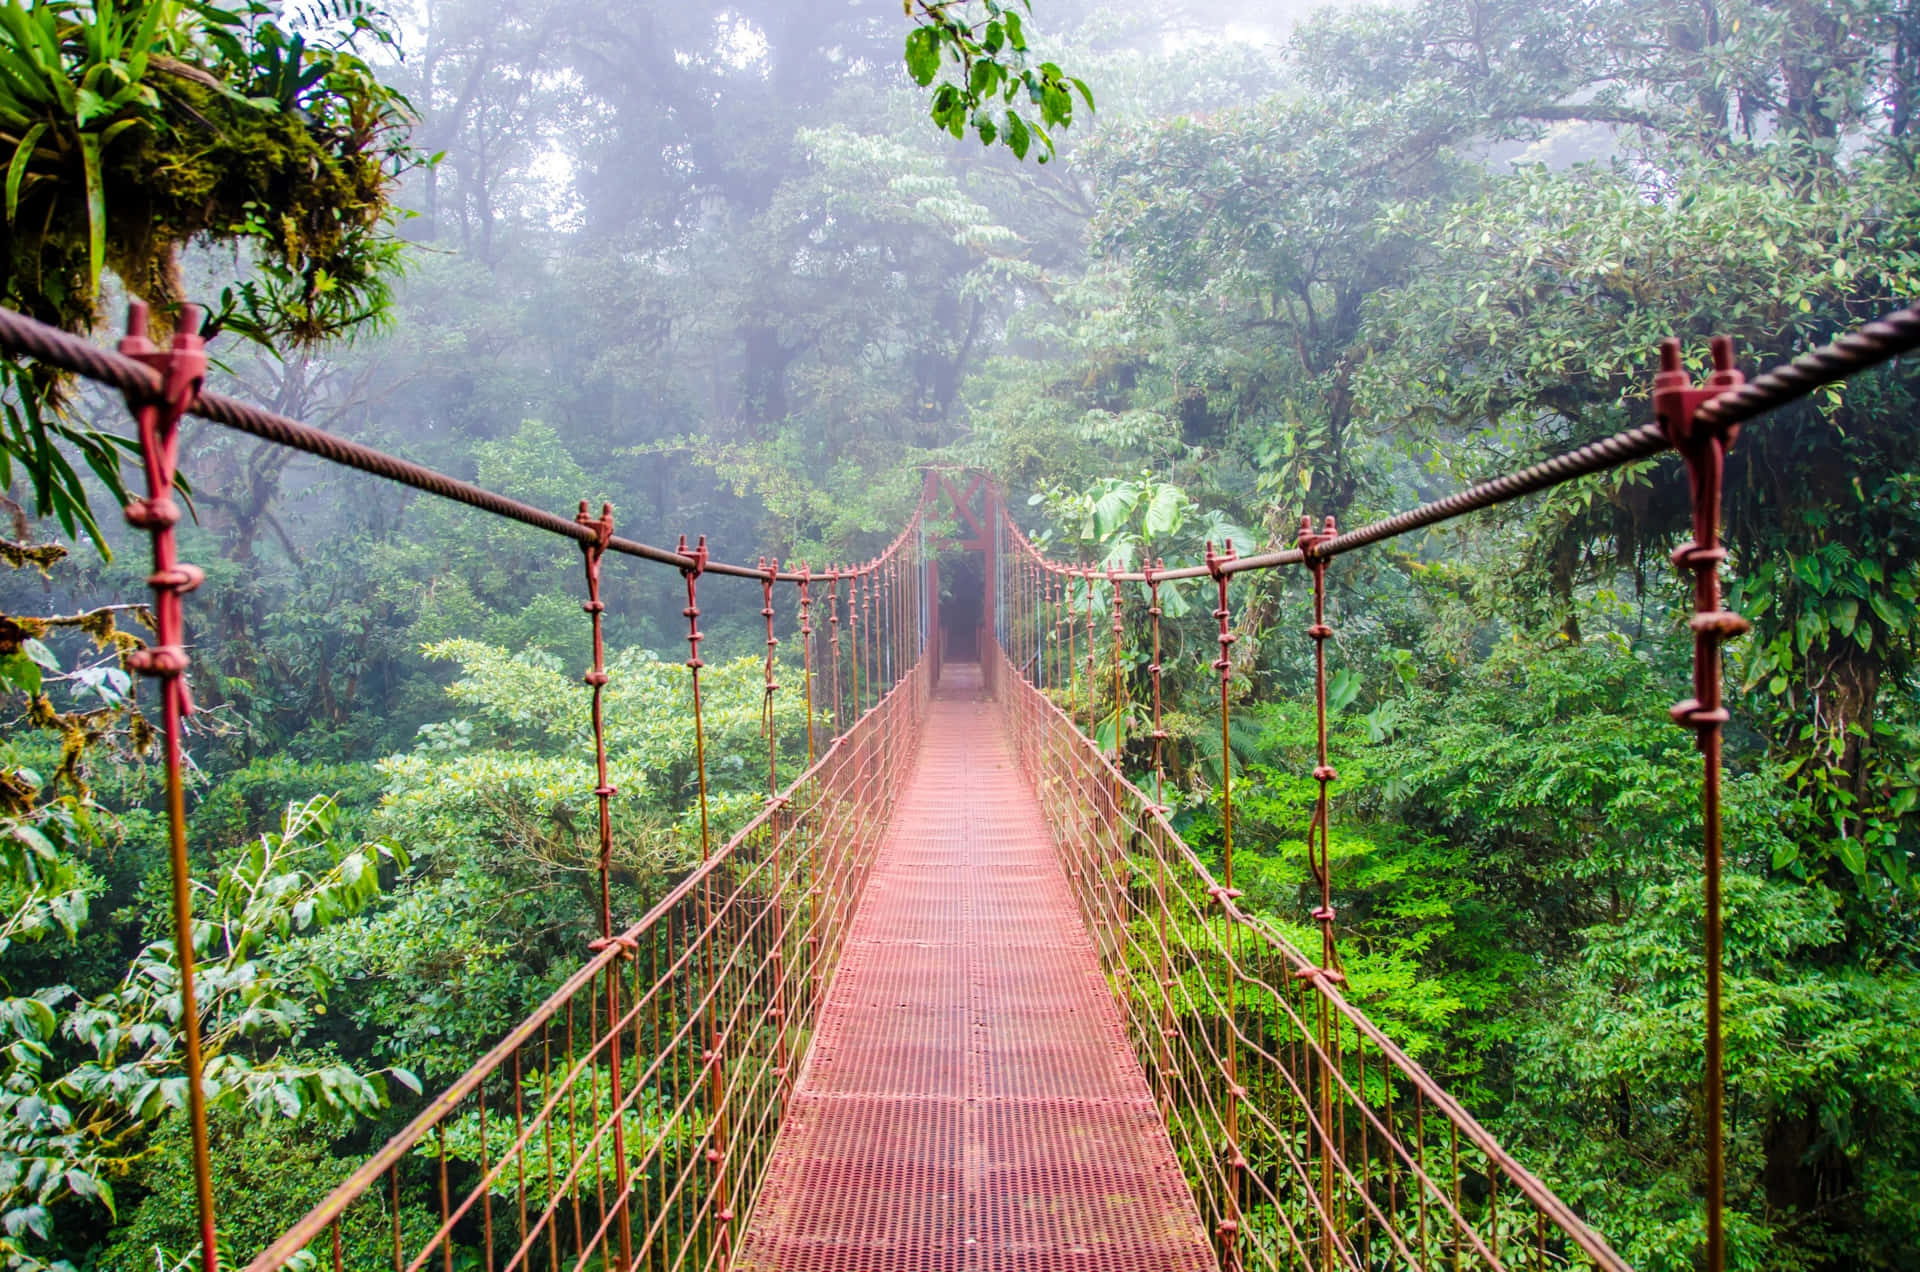 Explore the Jungle Beauty of Costa Rica